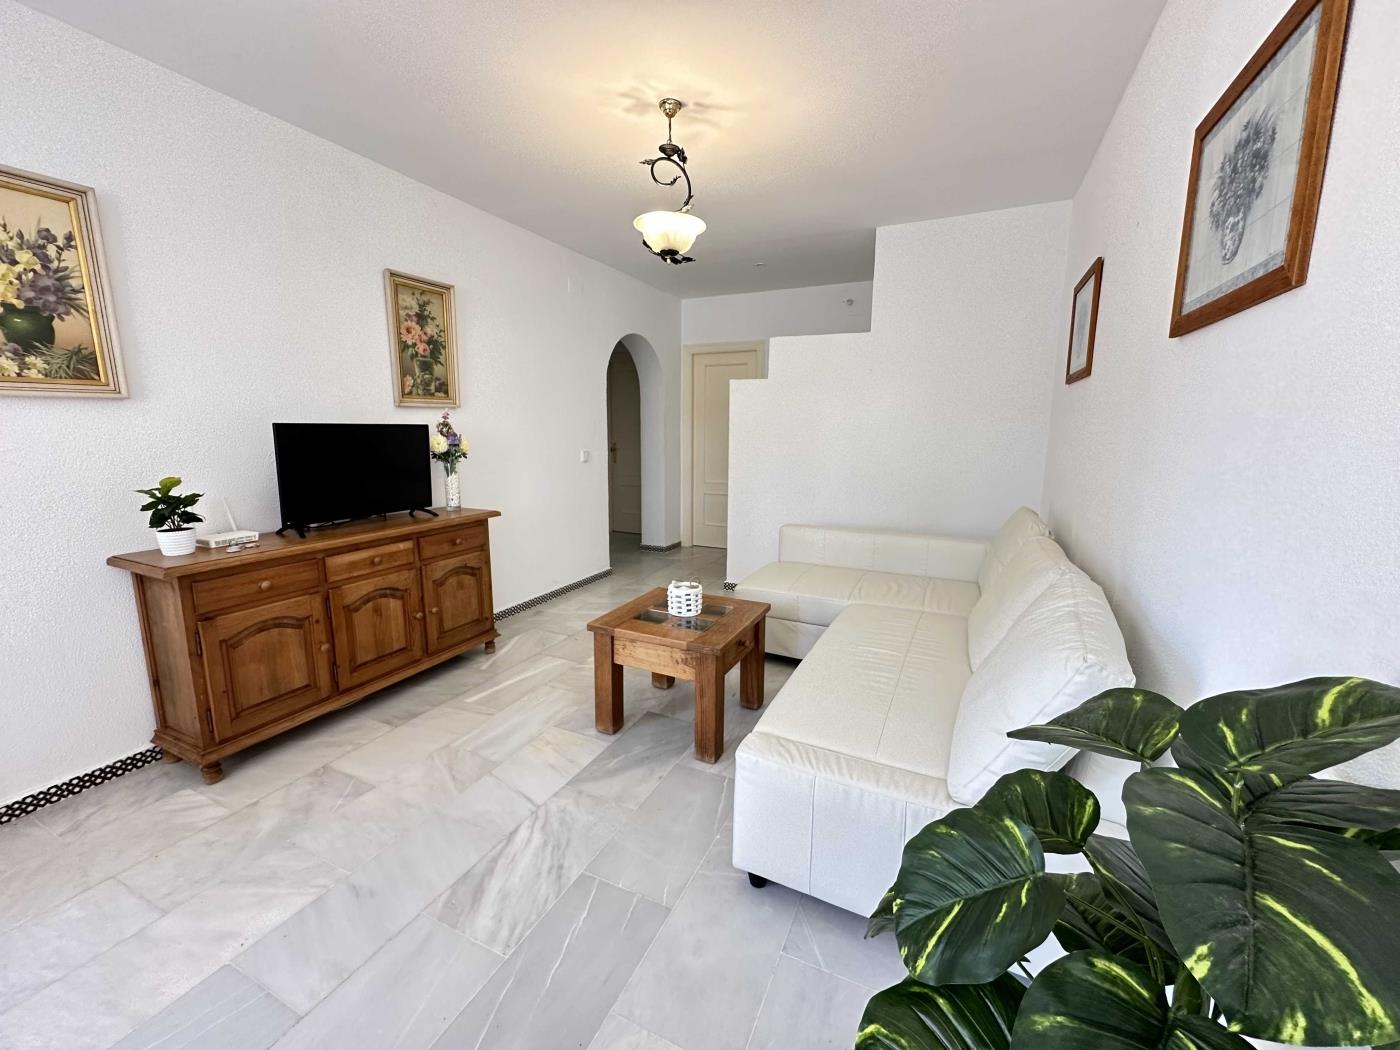 Ref. P7. Two bedroom first floor apartment in Chiclana de la Frontera